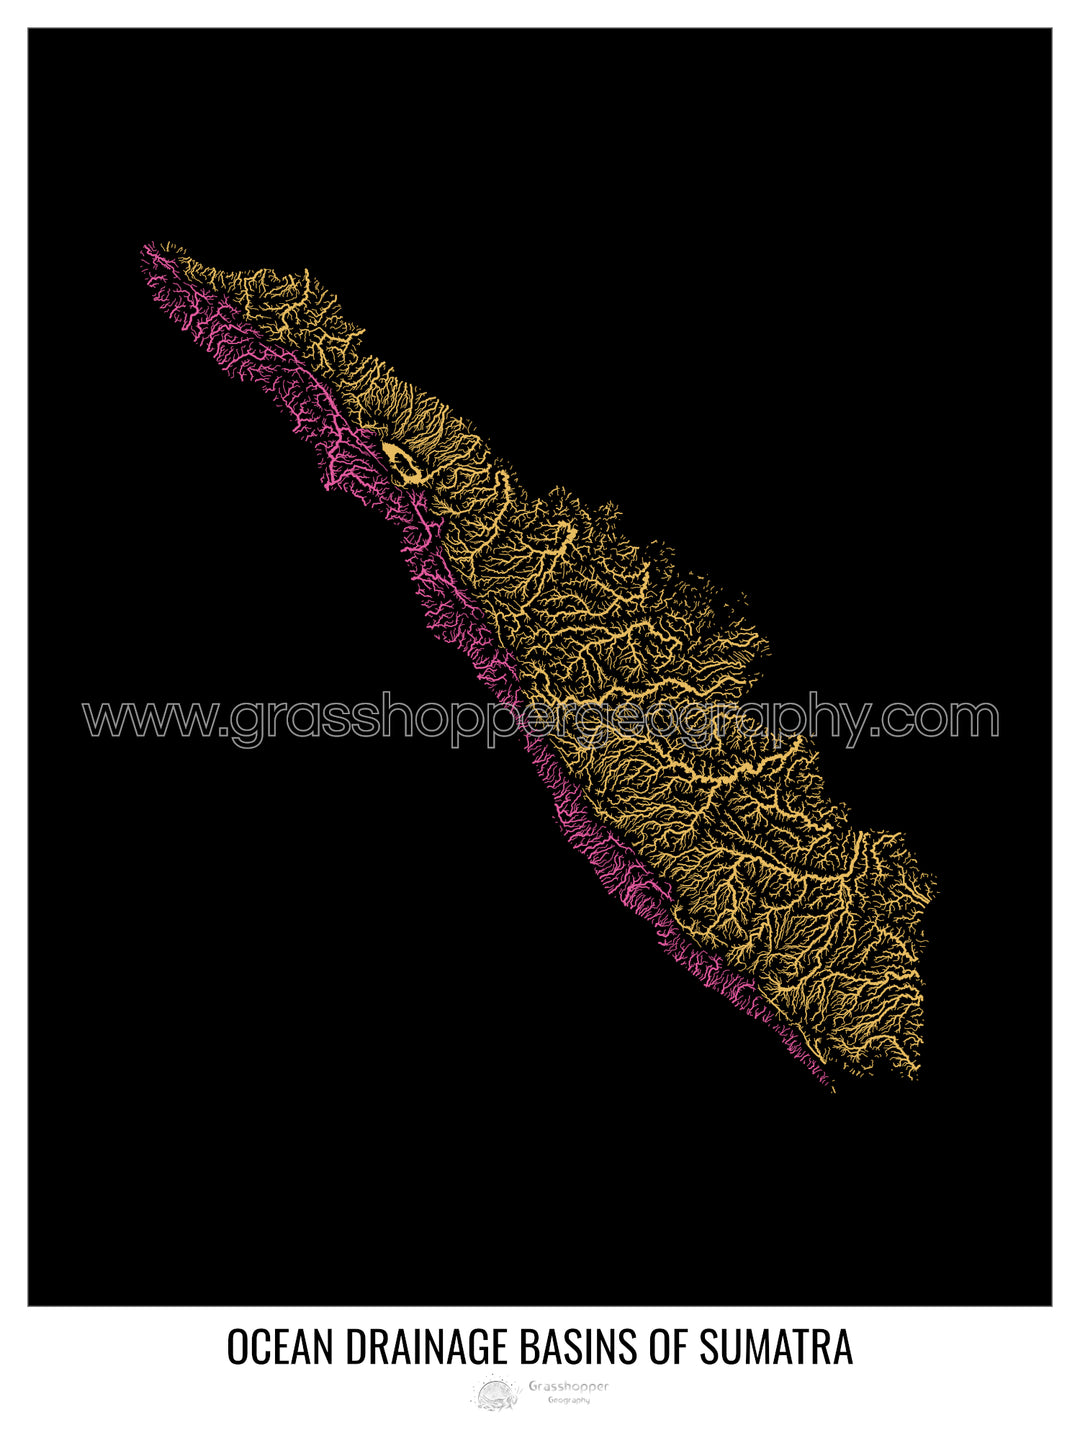 Sumatra - Carte des bassins hydrographiques océaniques, noir v1 - Fine Art Print